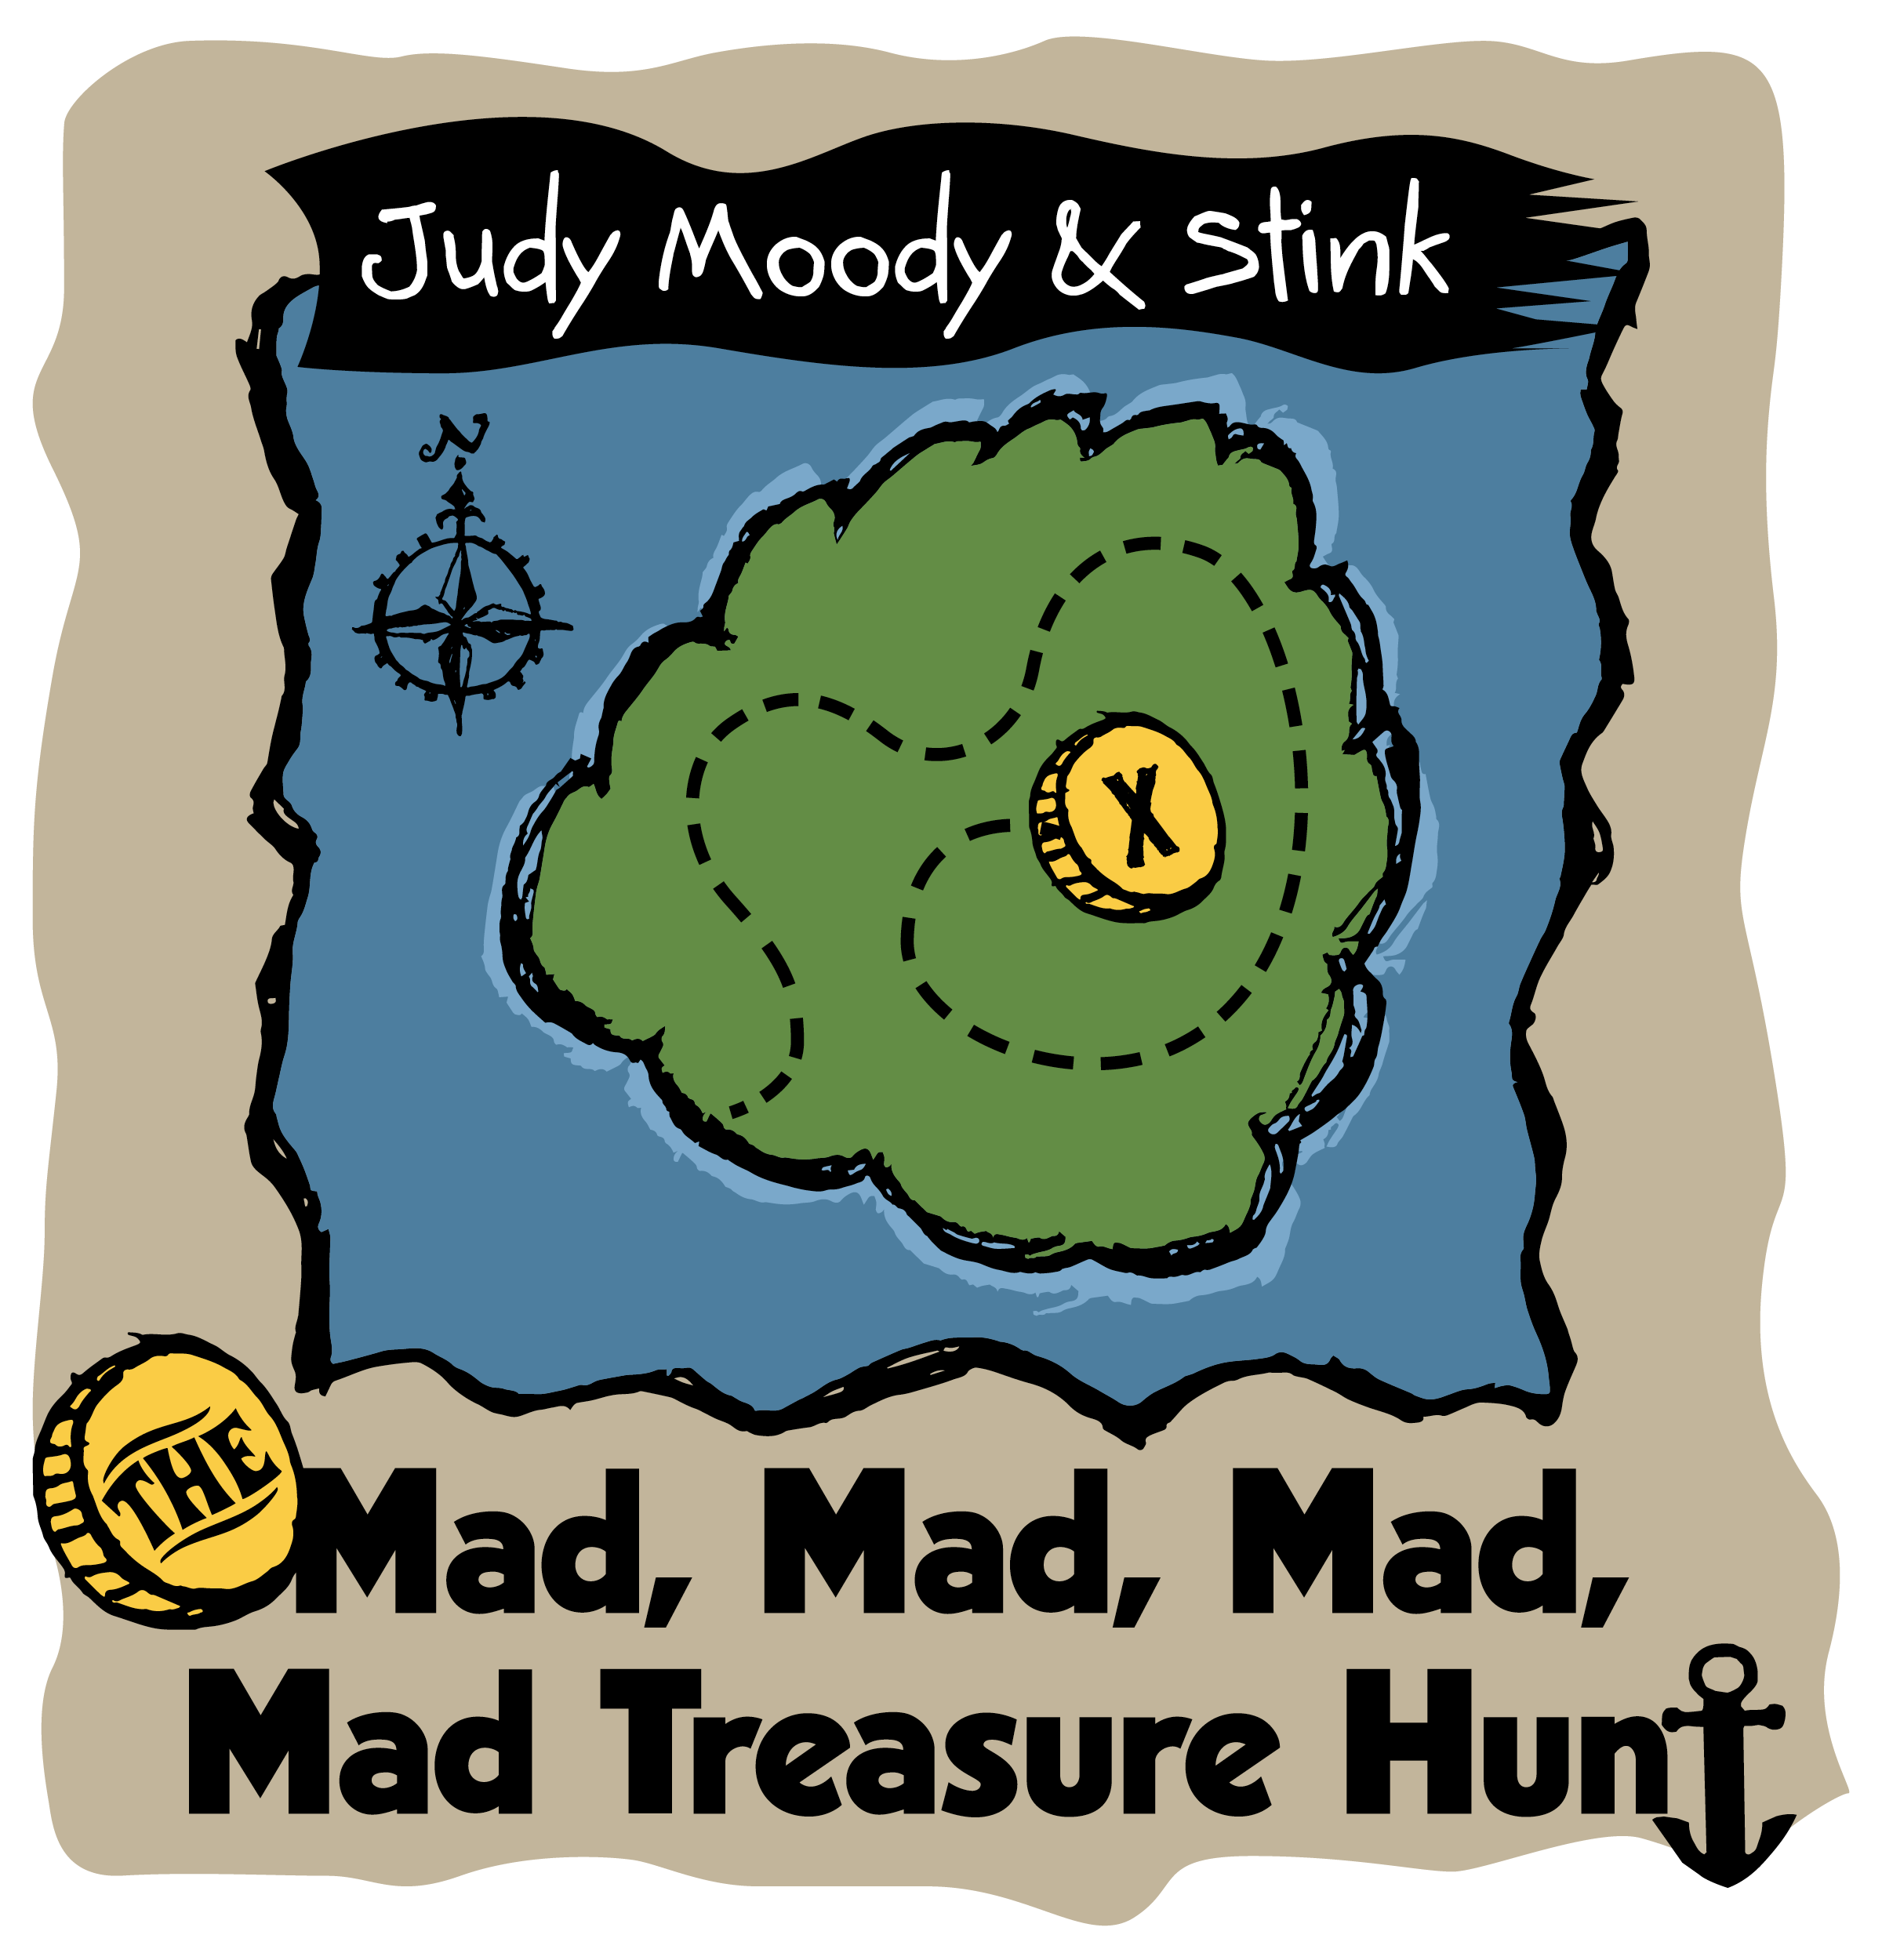 Judy Moody & Stink - Mad, Mad, Mad, Mad Treasure Hunt